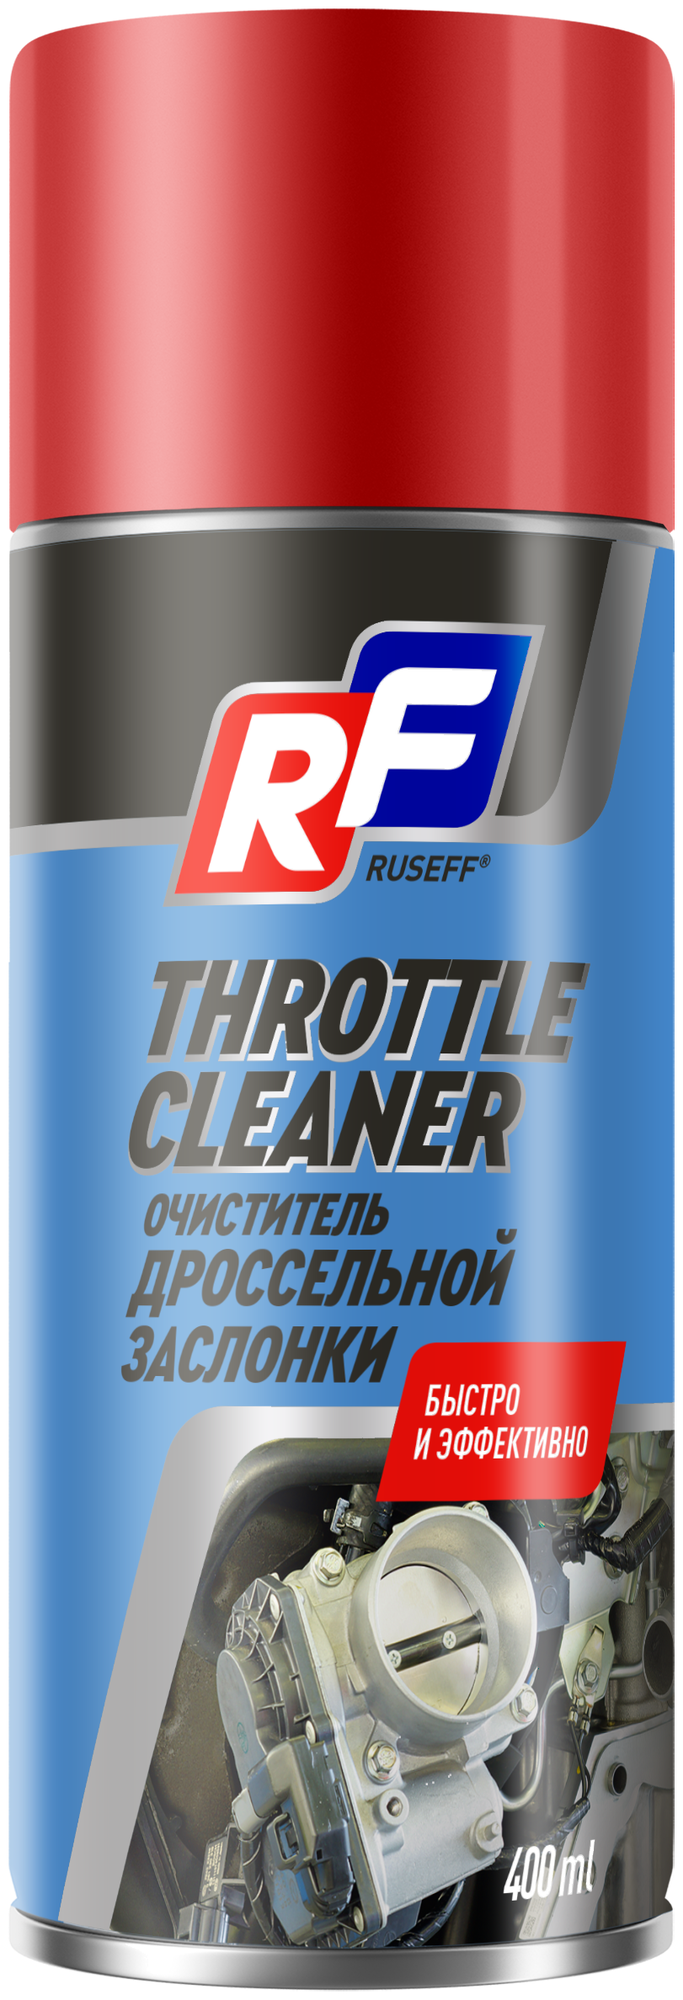 Очиститель RUSEFF Throttle Cleaner